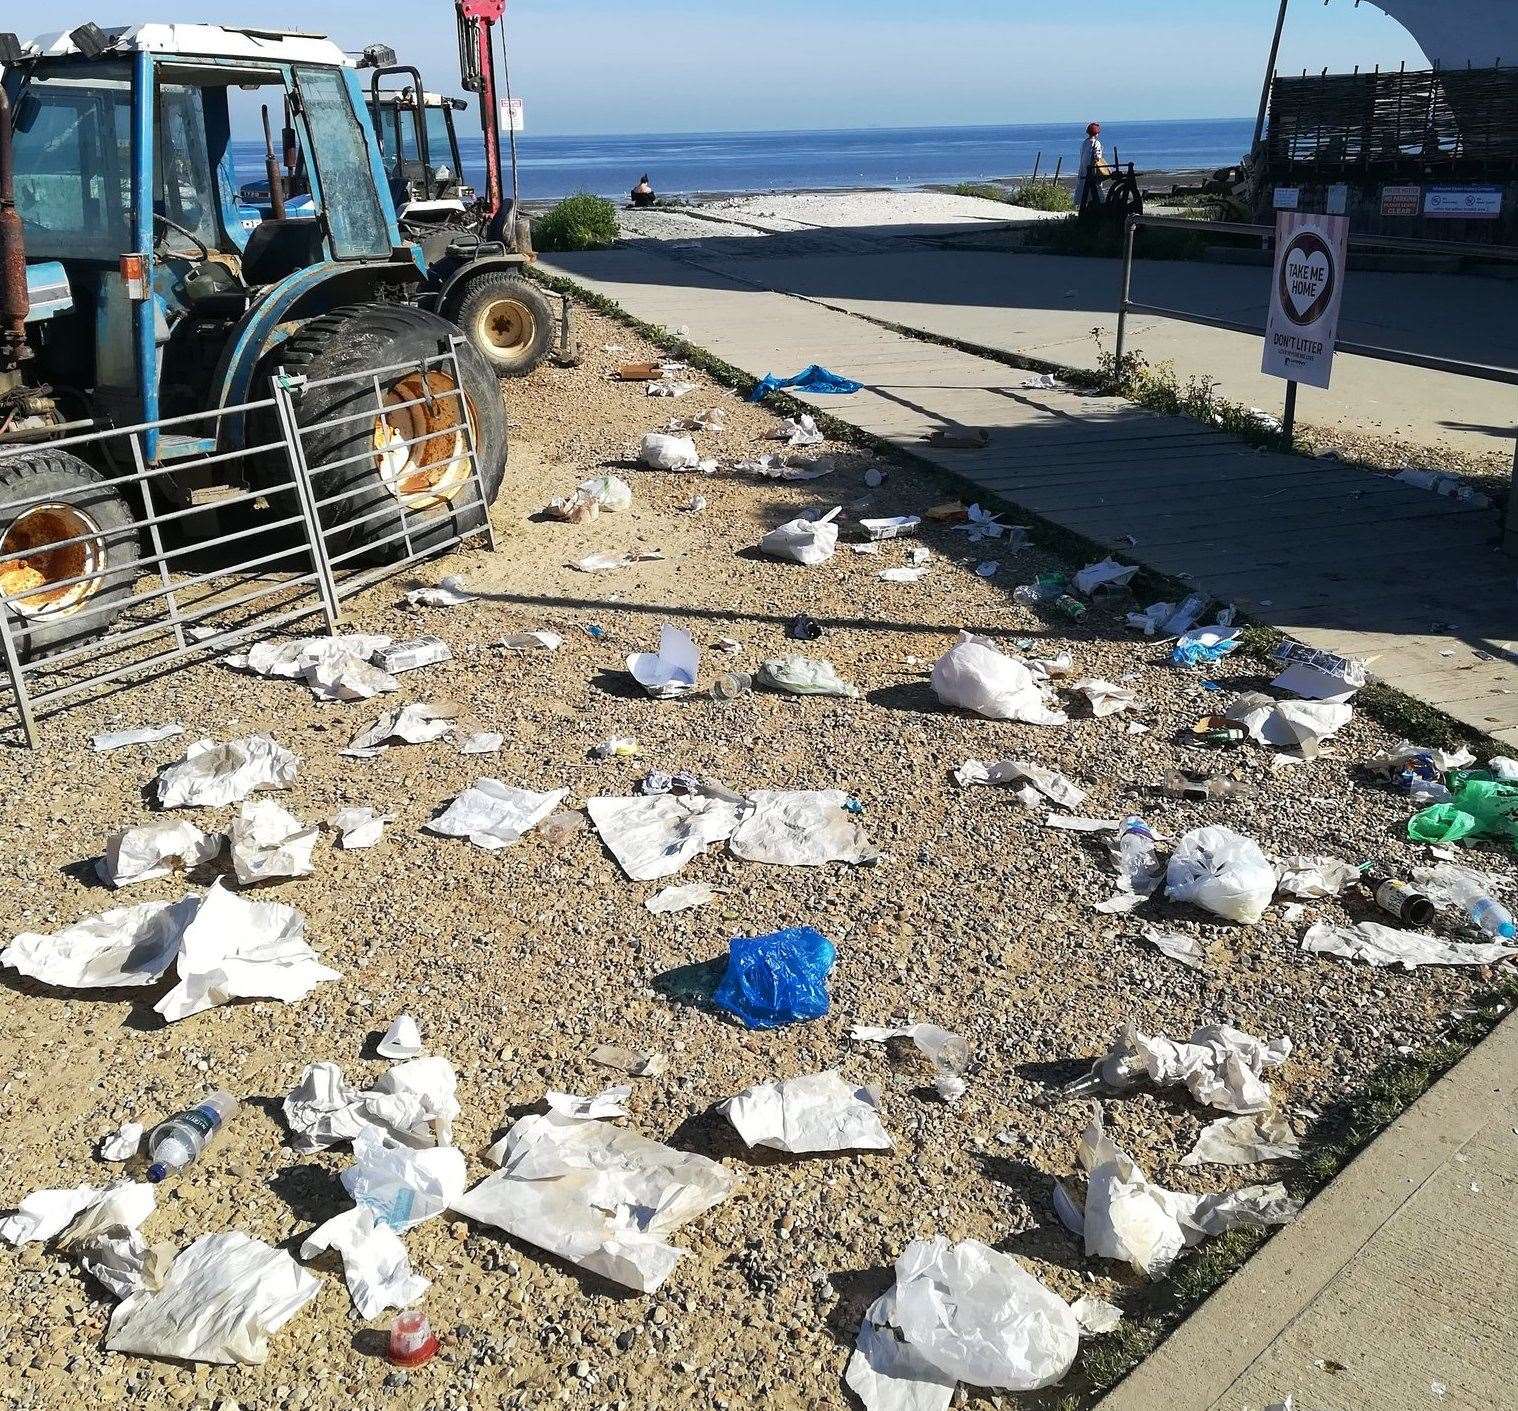 Litter strewn across Whitstable beach. Pic: Daniel Farmer